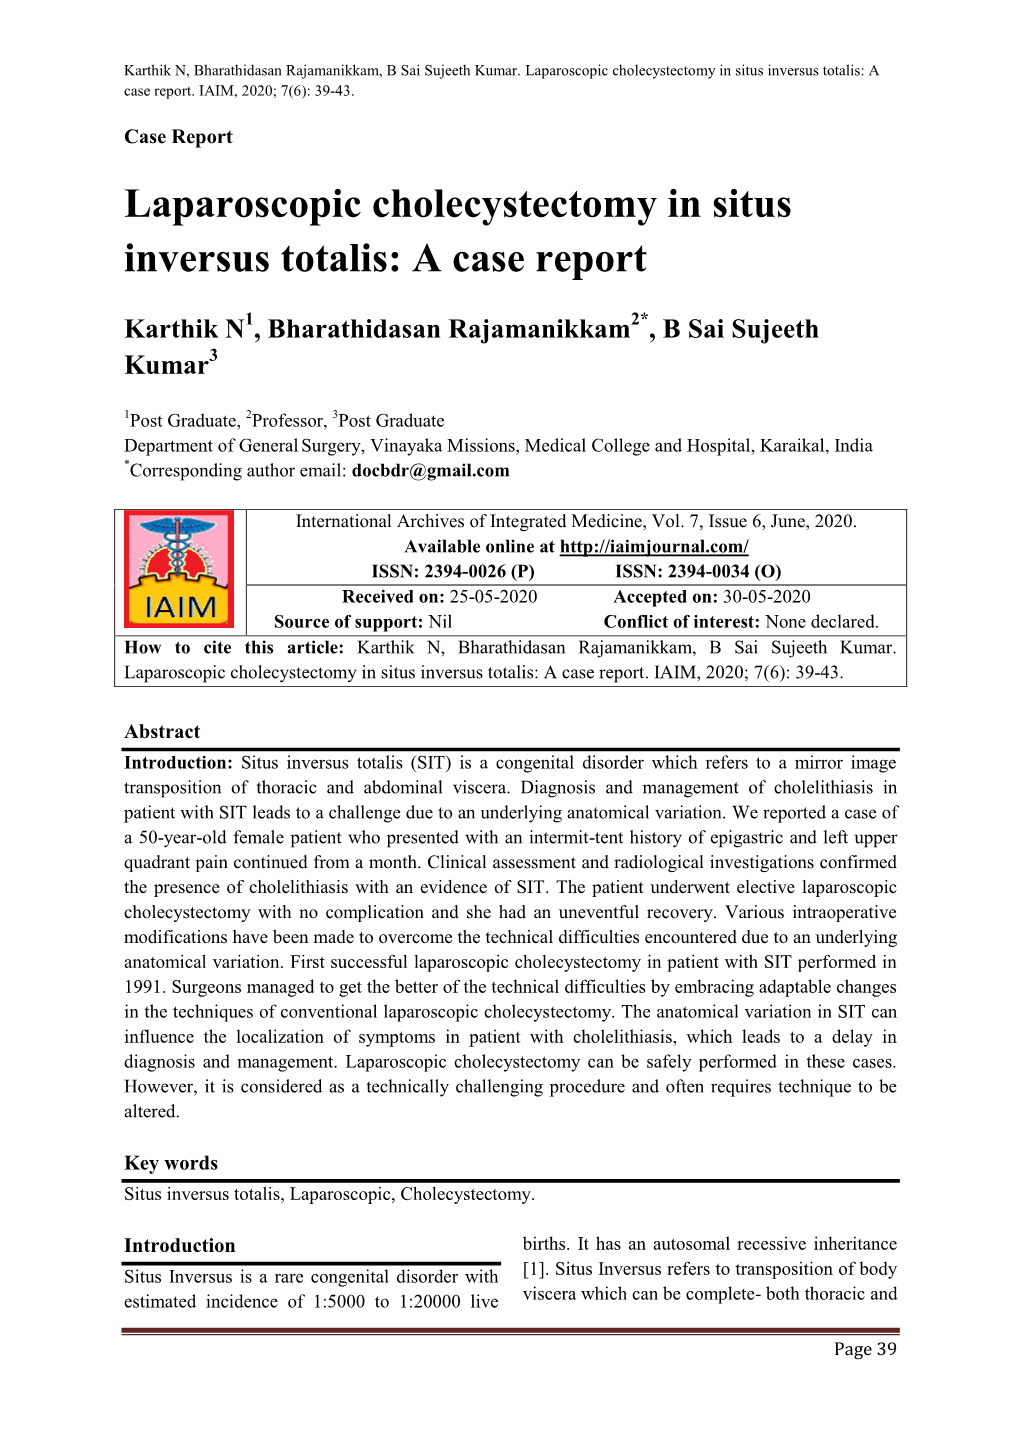 Laparoscopic Cholecystectomy in Situs Inversus Totalis: a Case Report